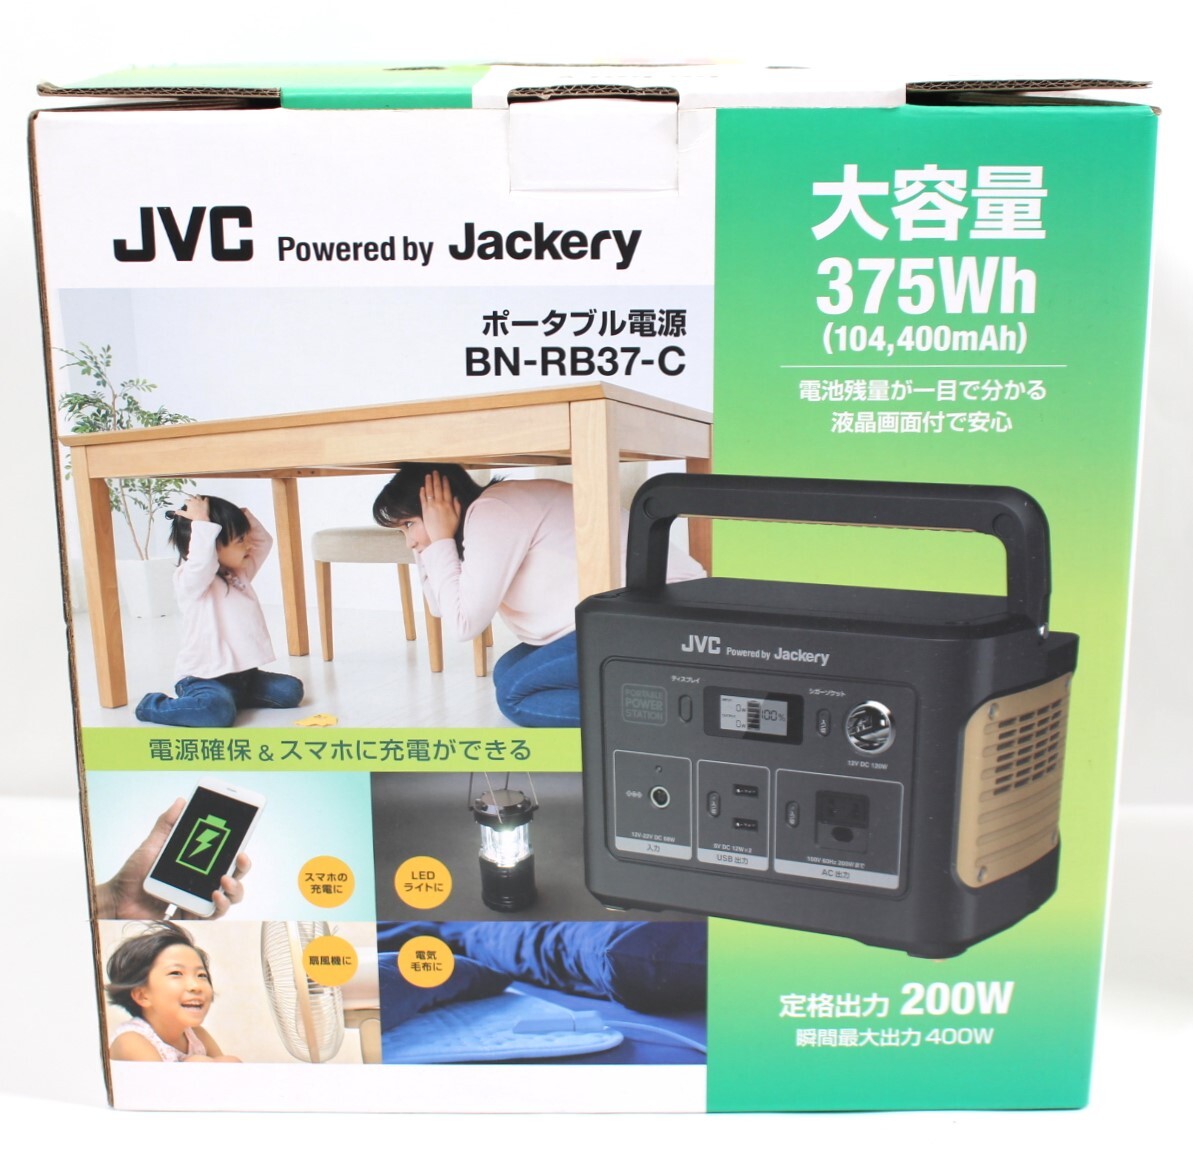 Y6231#◆中古美品◆JVCケンウッド Powered by Jackery ポータブル電源 BN-RB37-C _発送は直接箱に発送伝票を貼って行います